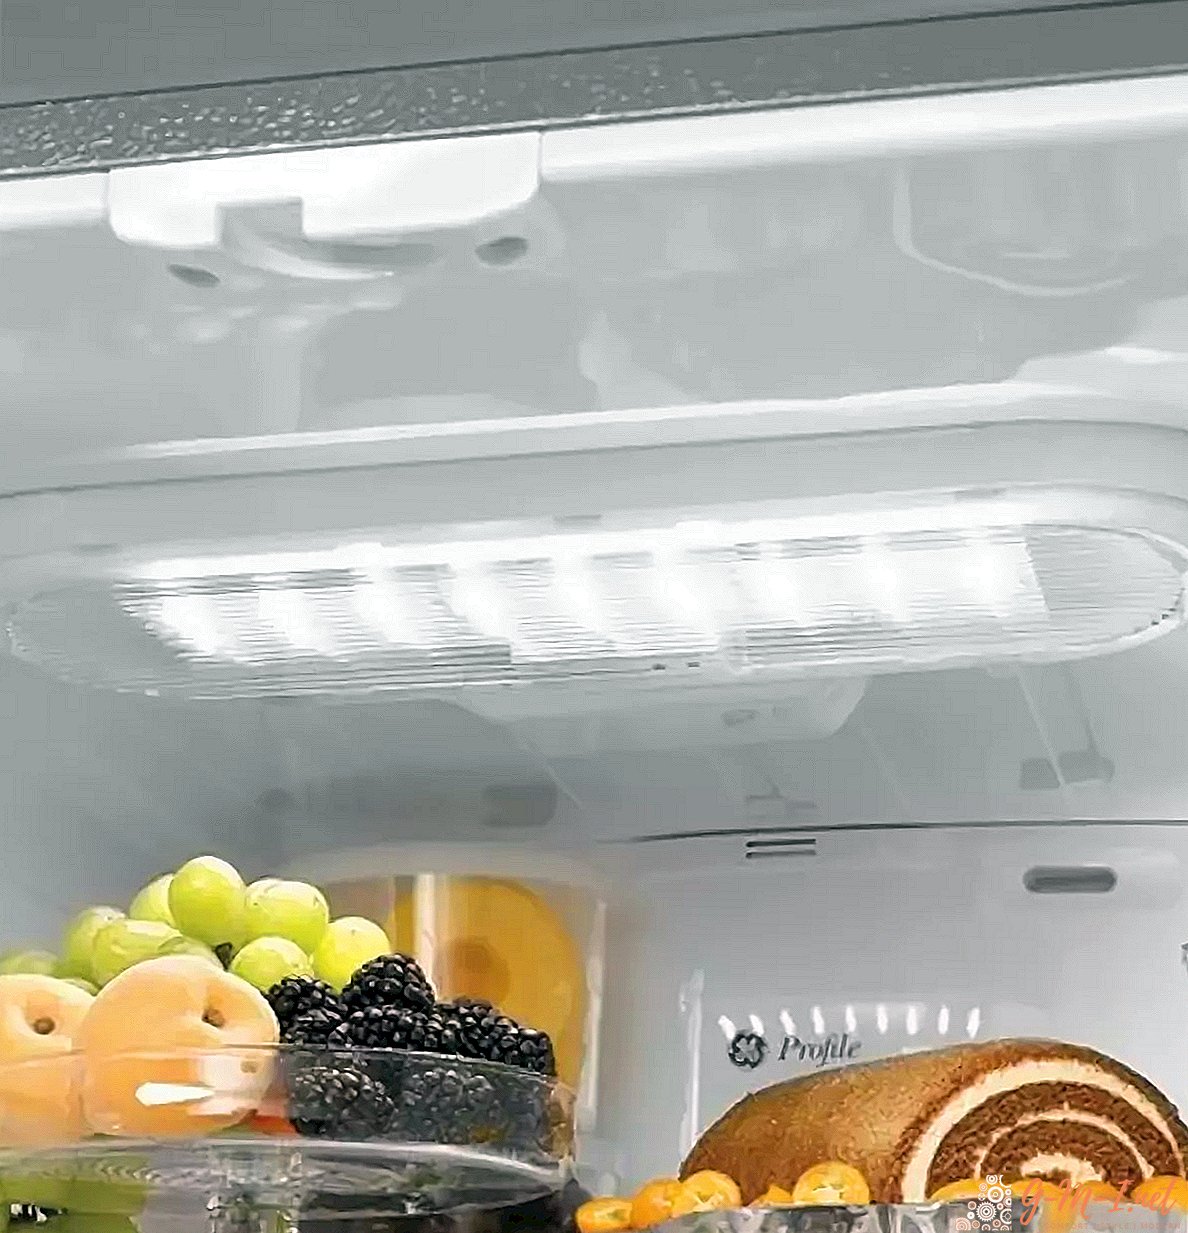 Jak vyměnit žárovku v lednici: zvládne ji dokonce i žena!